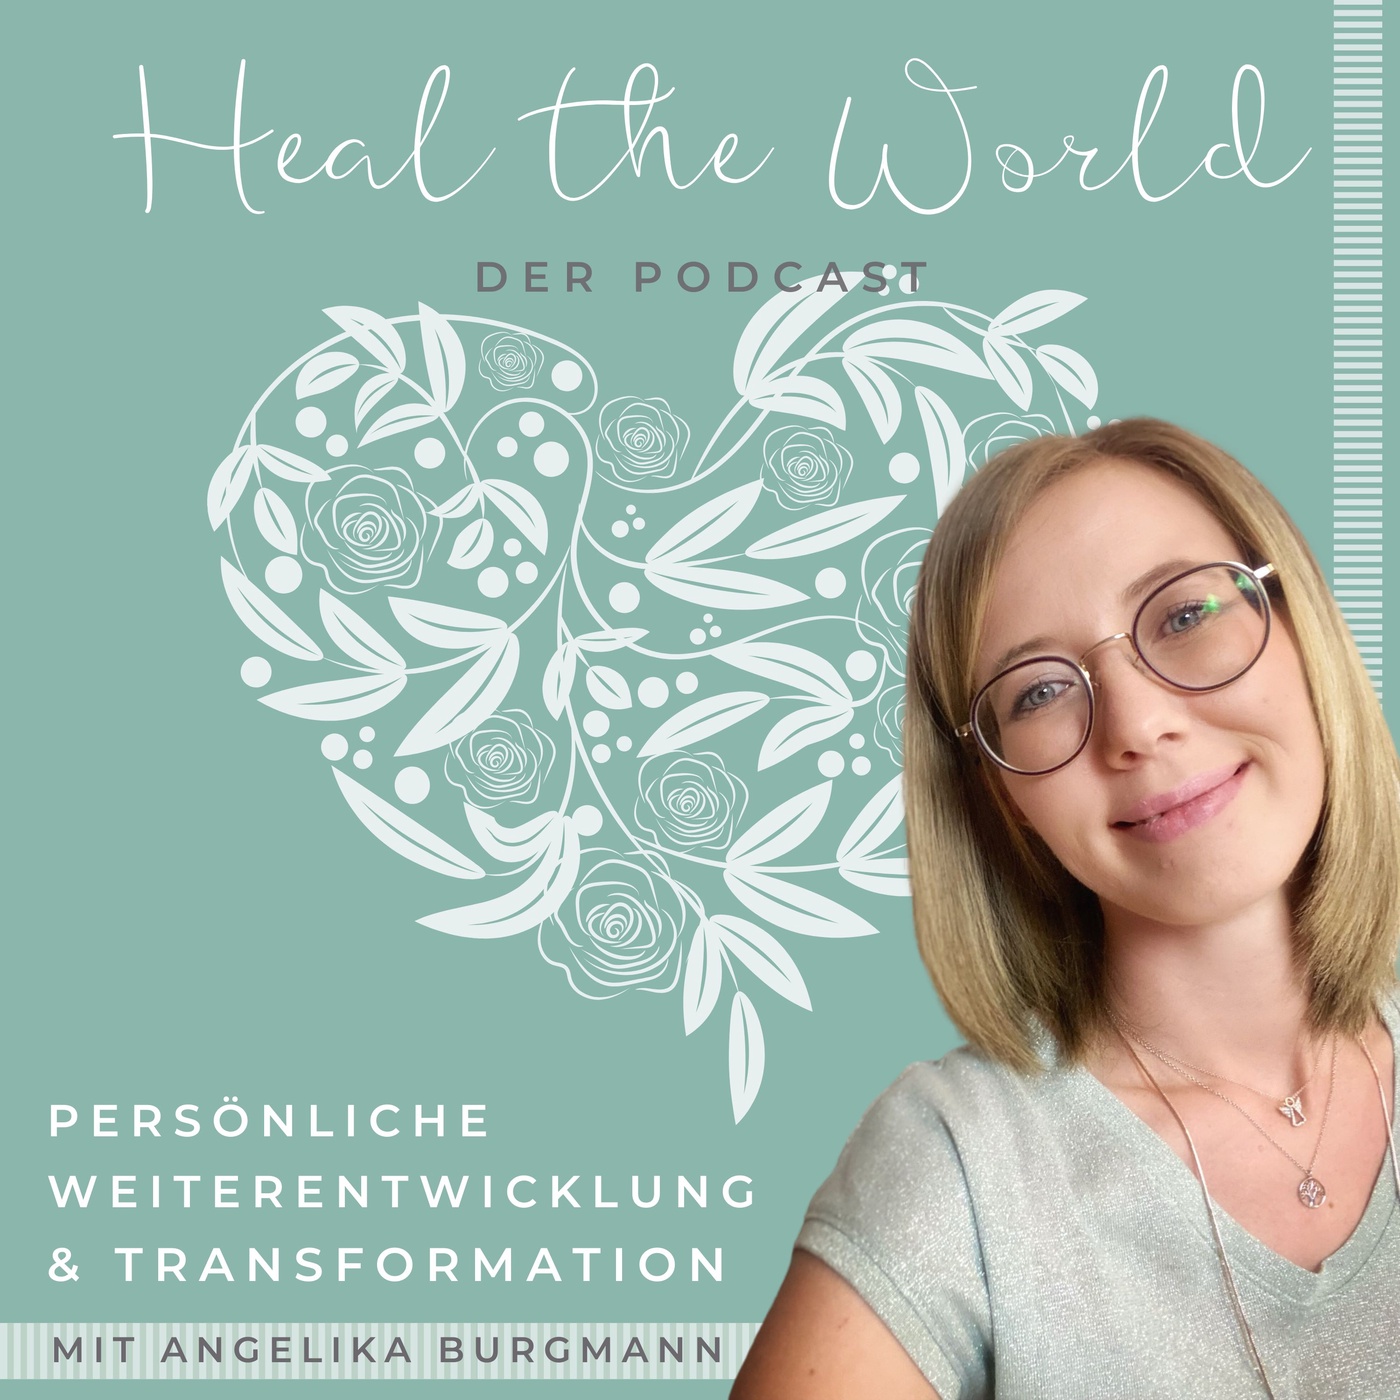 Heal The World - Persönliche Weiterentwicklung & Transformation